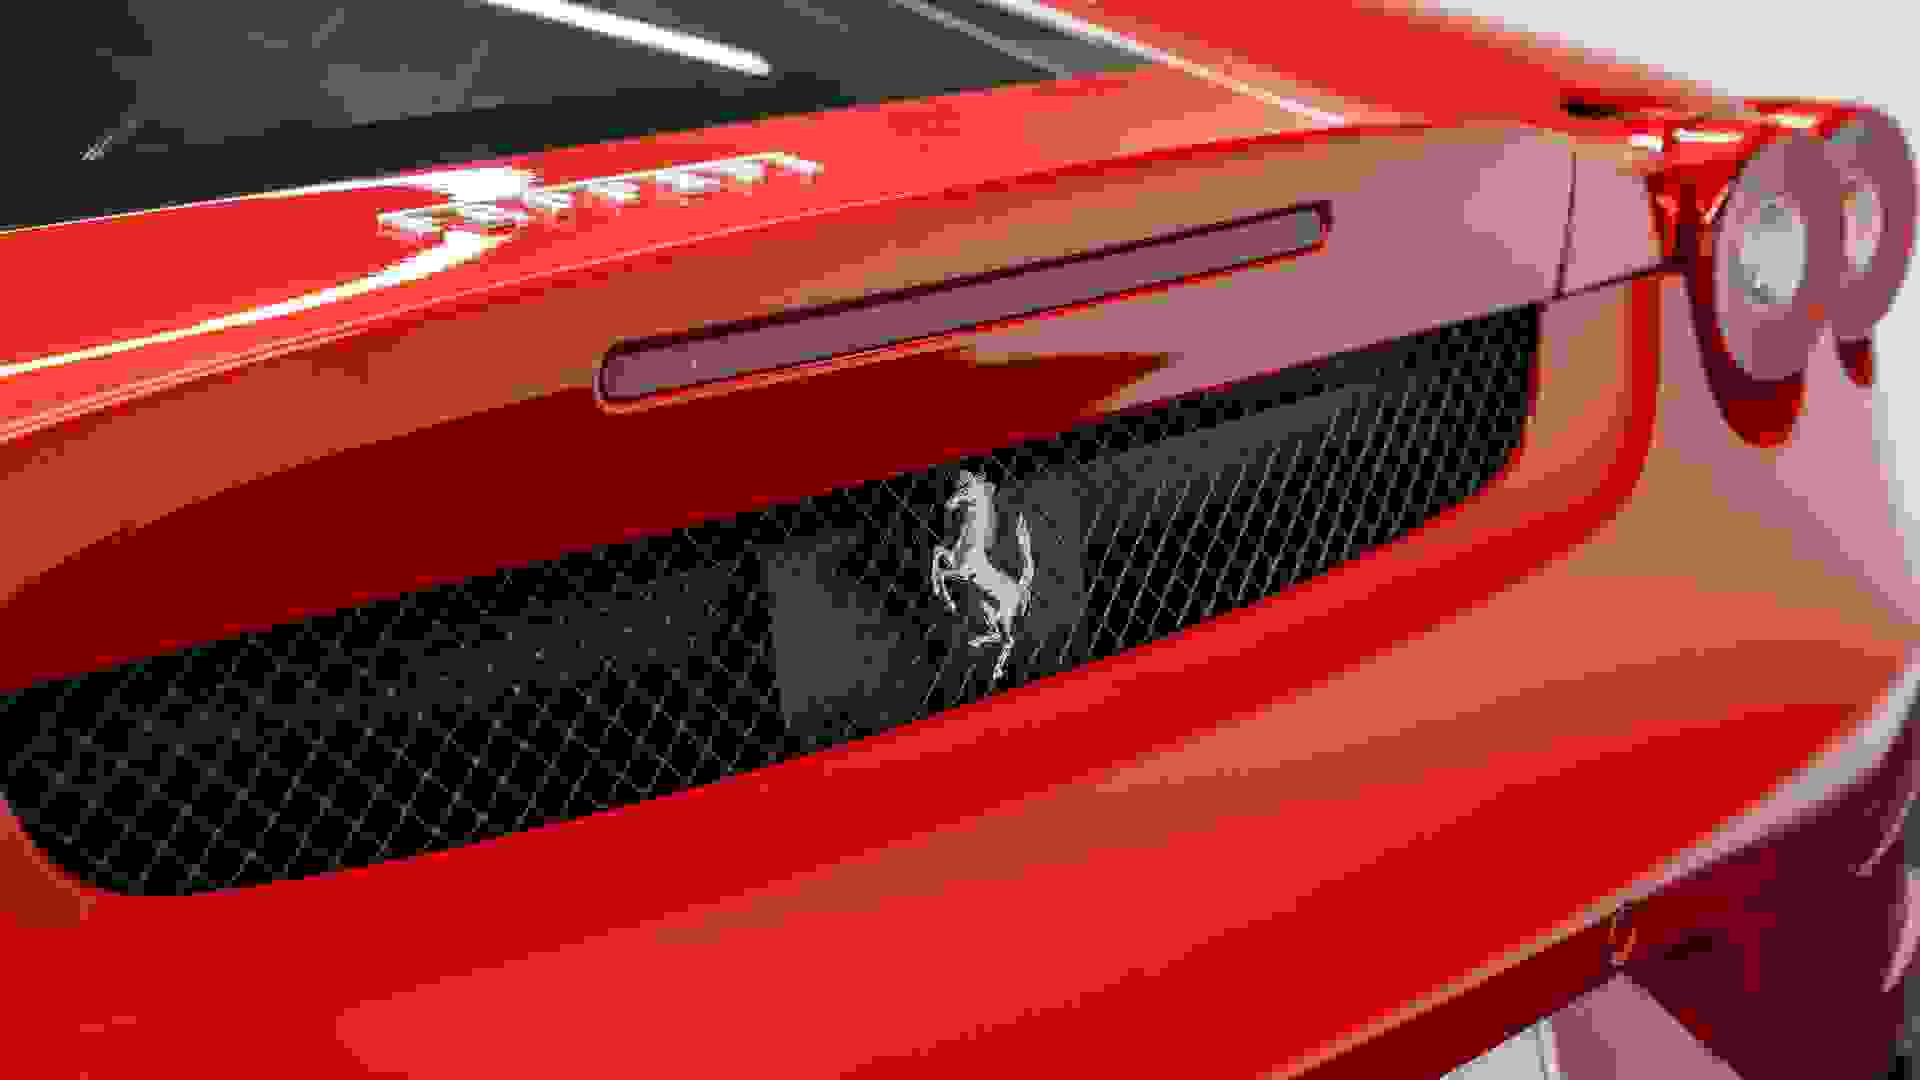 Ferrari F430 Photo 472c60f2-55f2-4f80-948e-62b20bcf4def.jpg